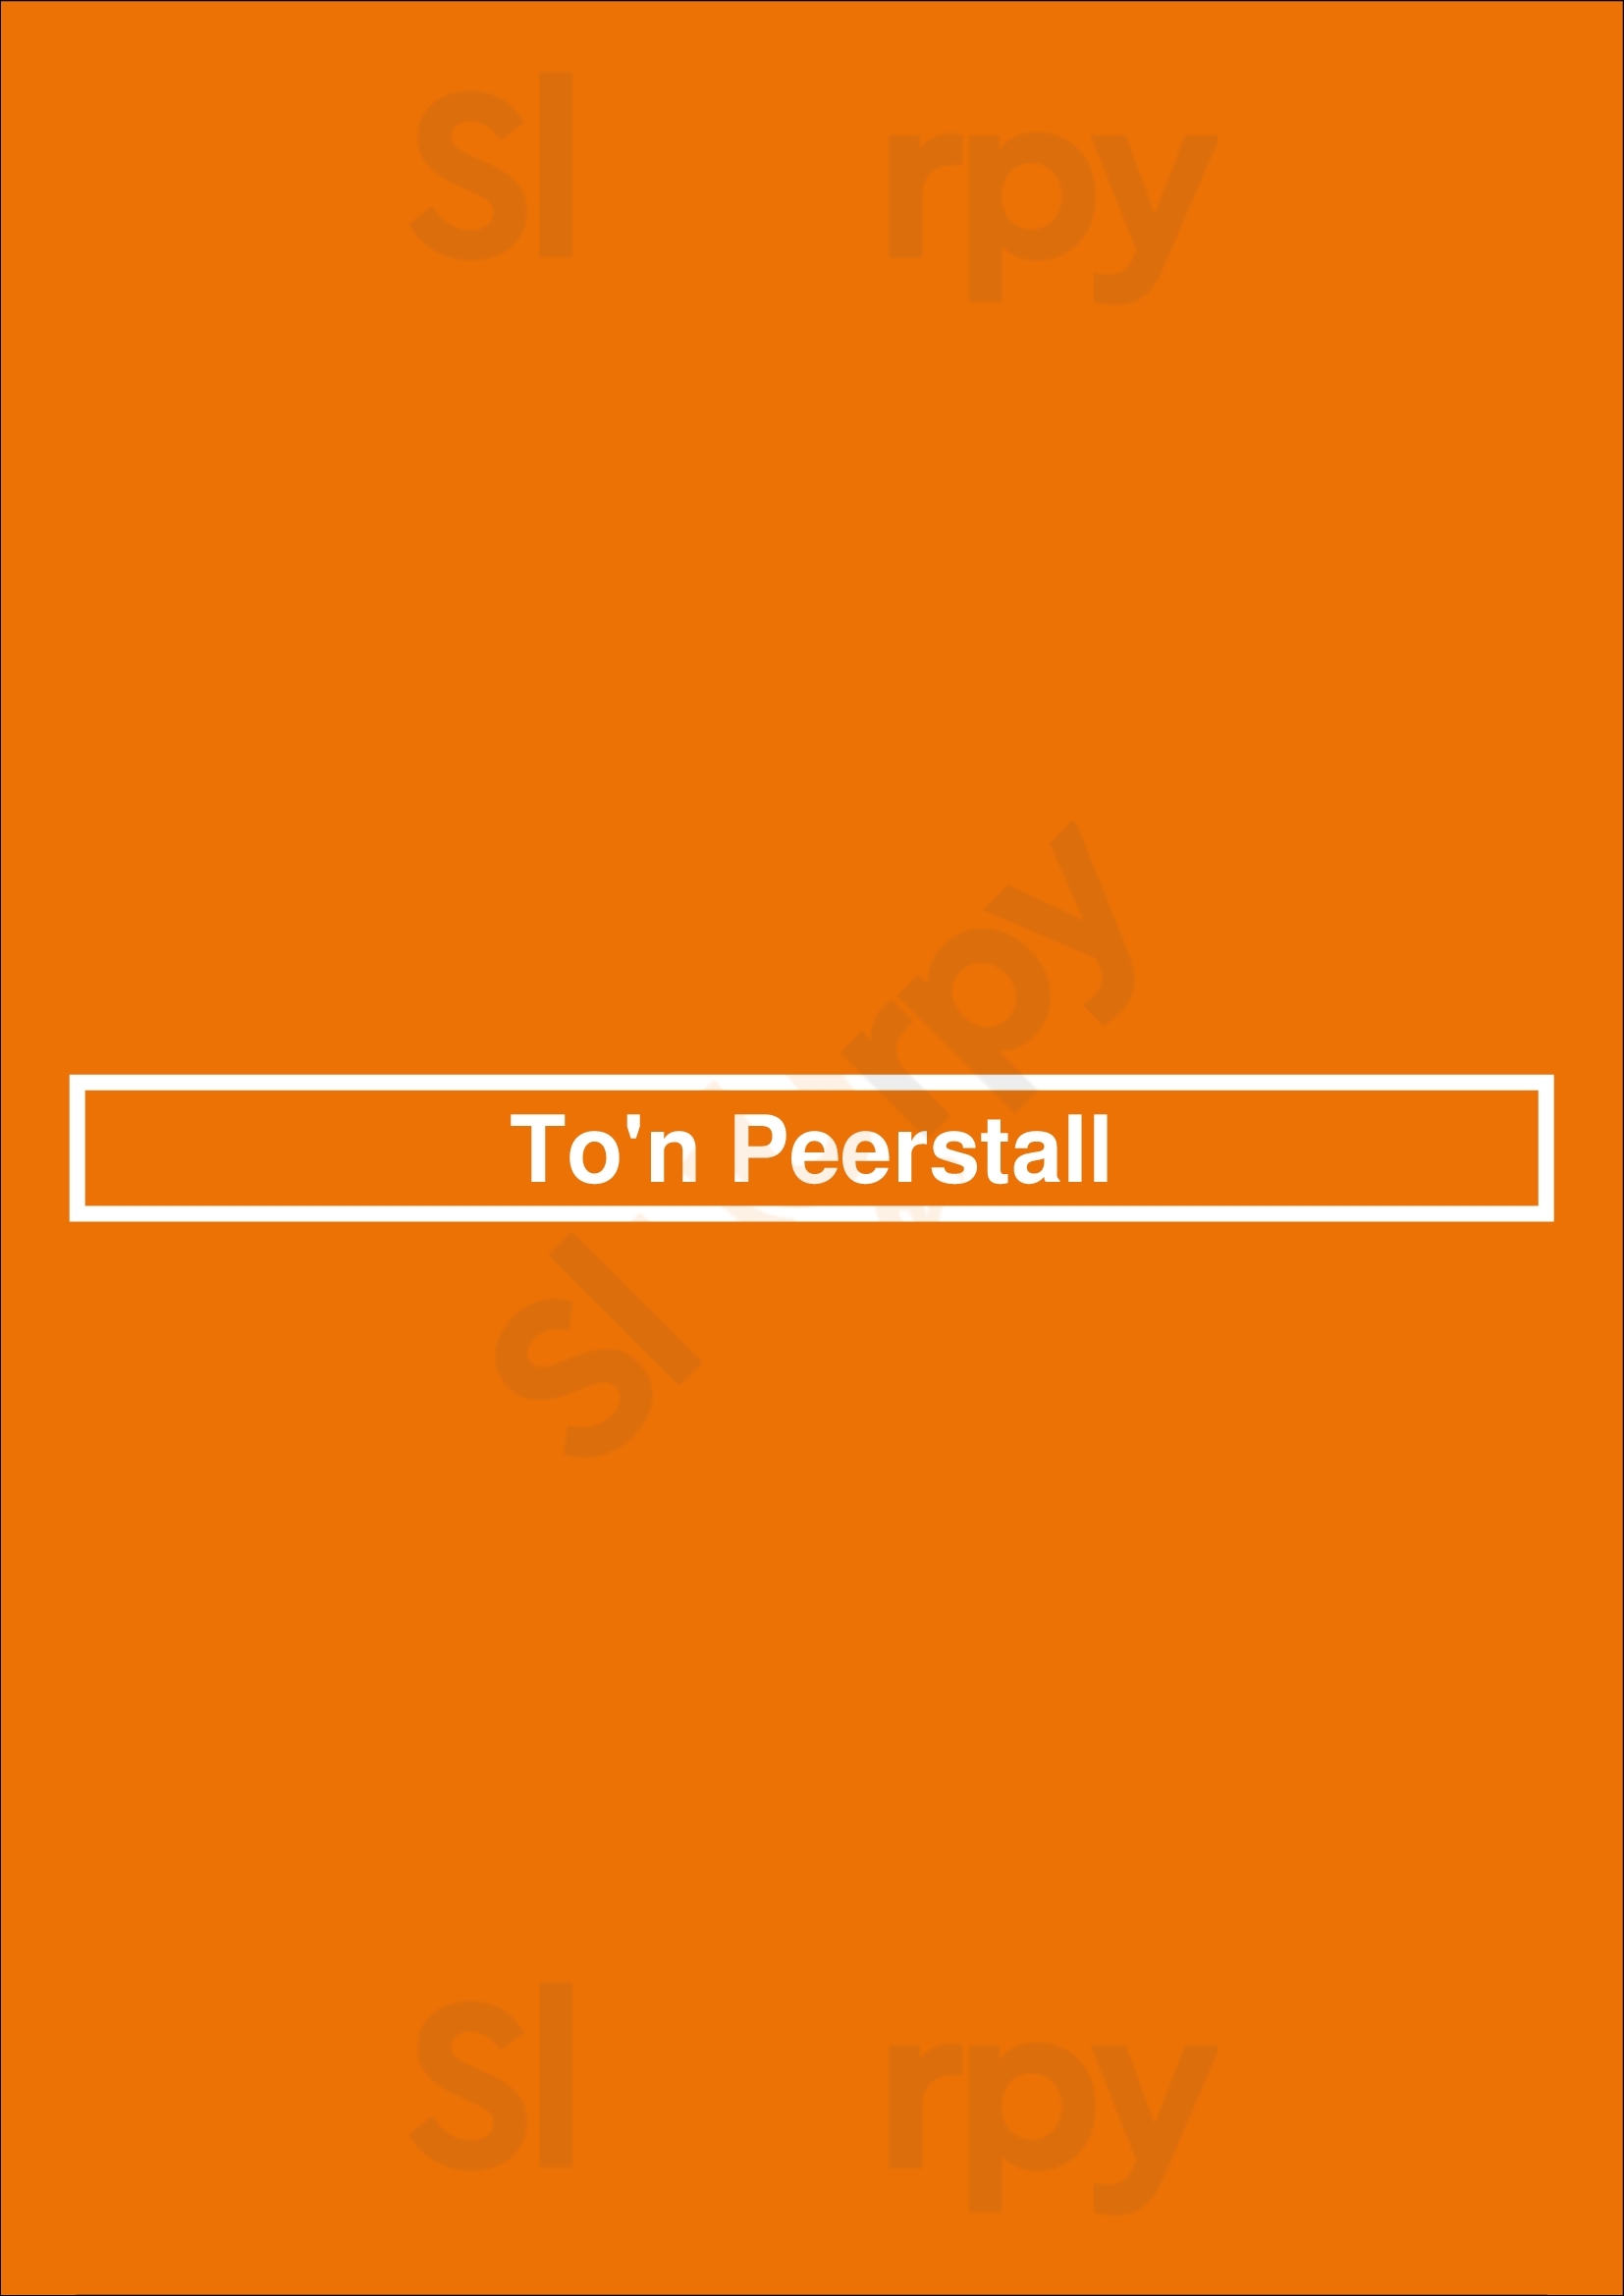 To'n Peerstall Hamburg Menu - 1